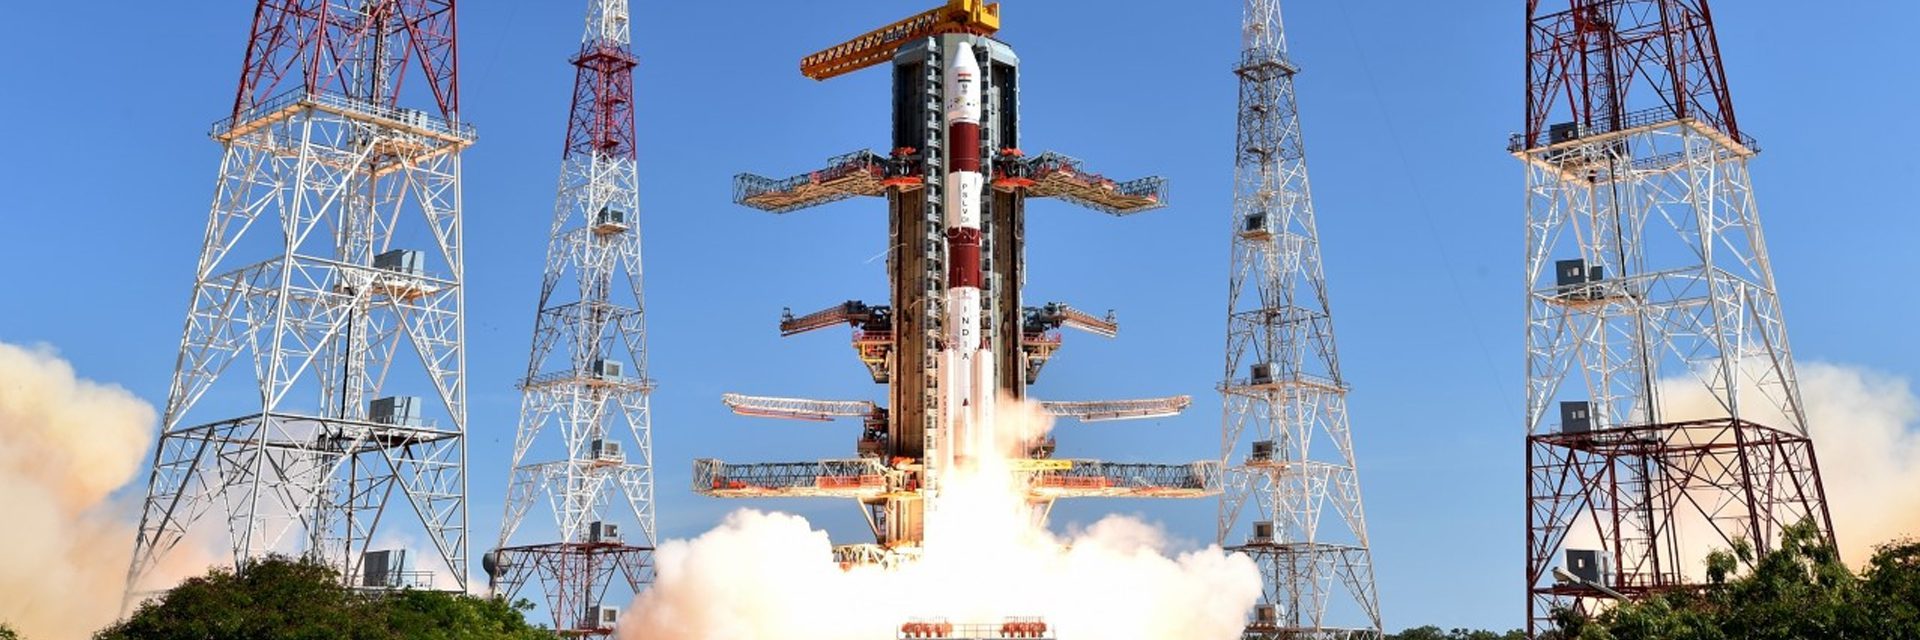 随着desi honchos准备好卫星，印度太空技术努力争取众多星座